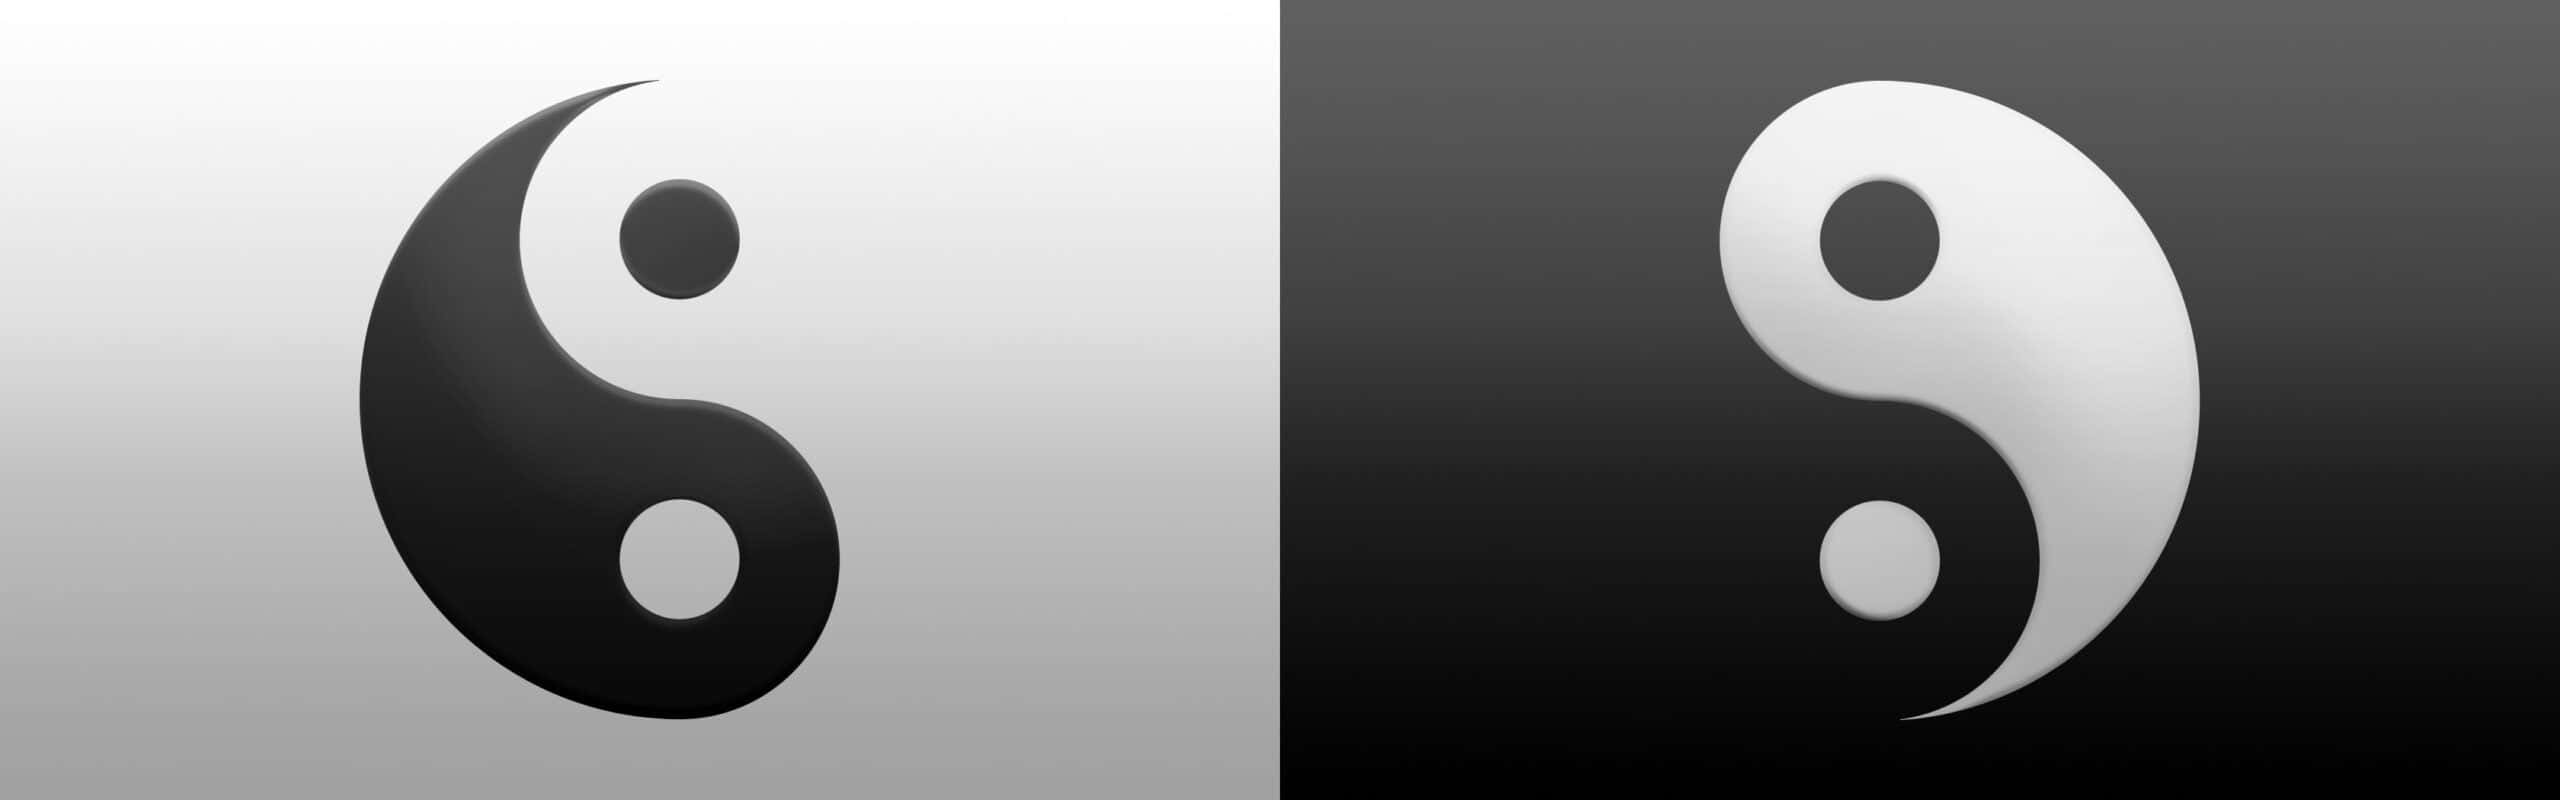 Unsímbolo De Yin Yang En Blanco Y Negro Fondo de pantalla